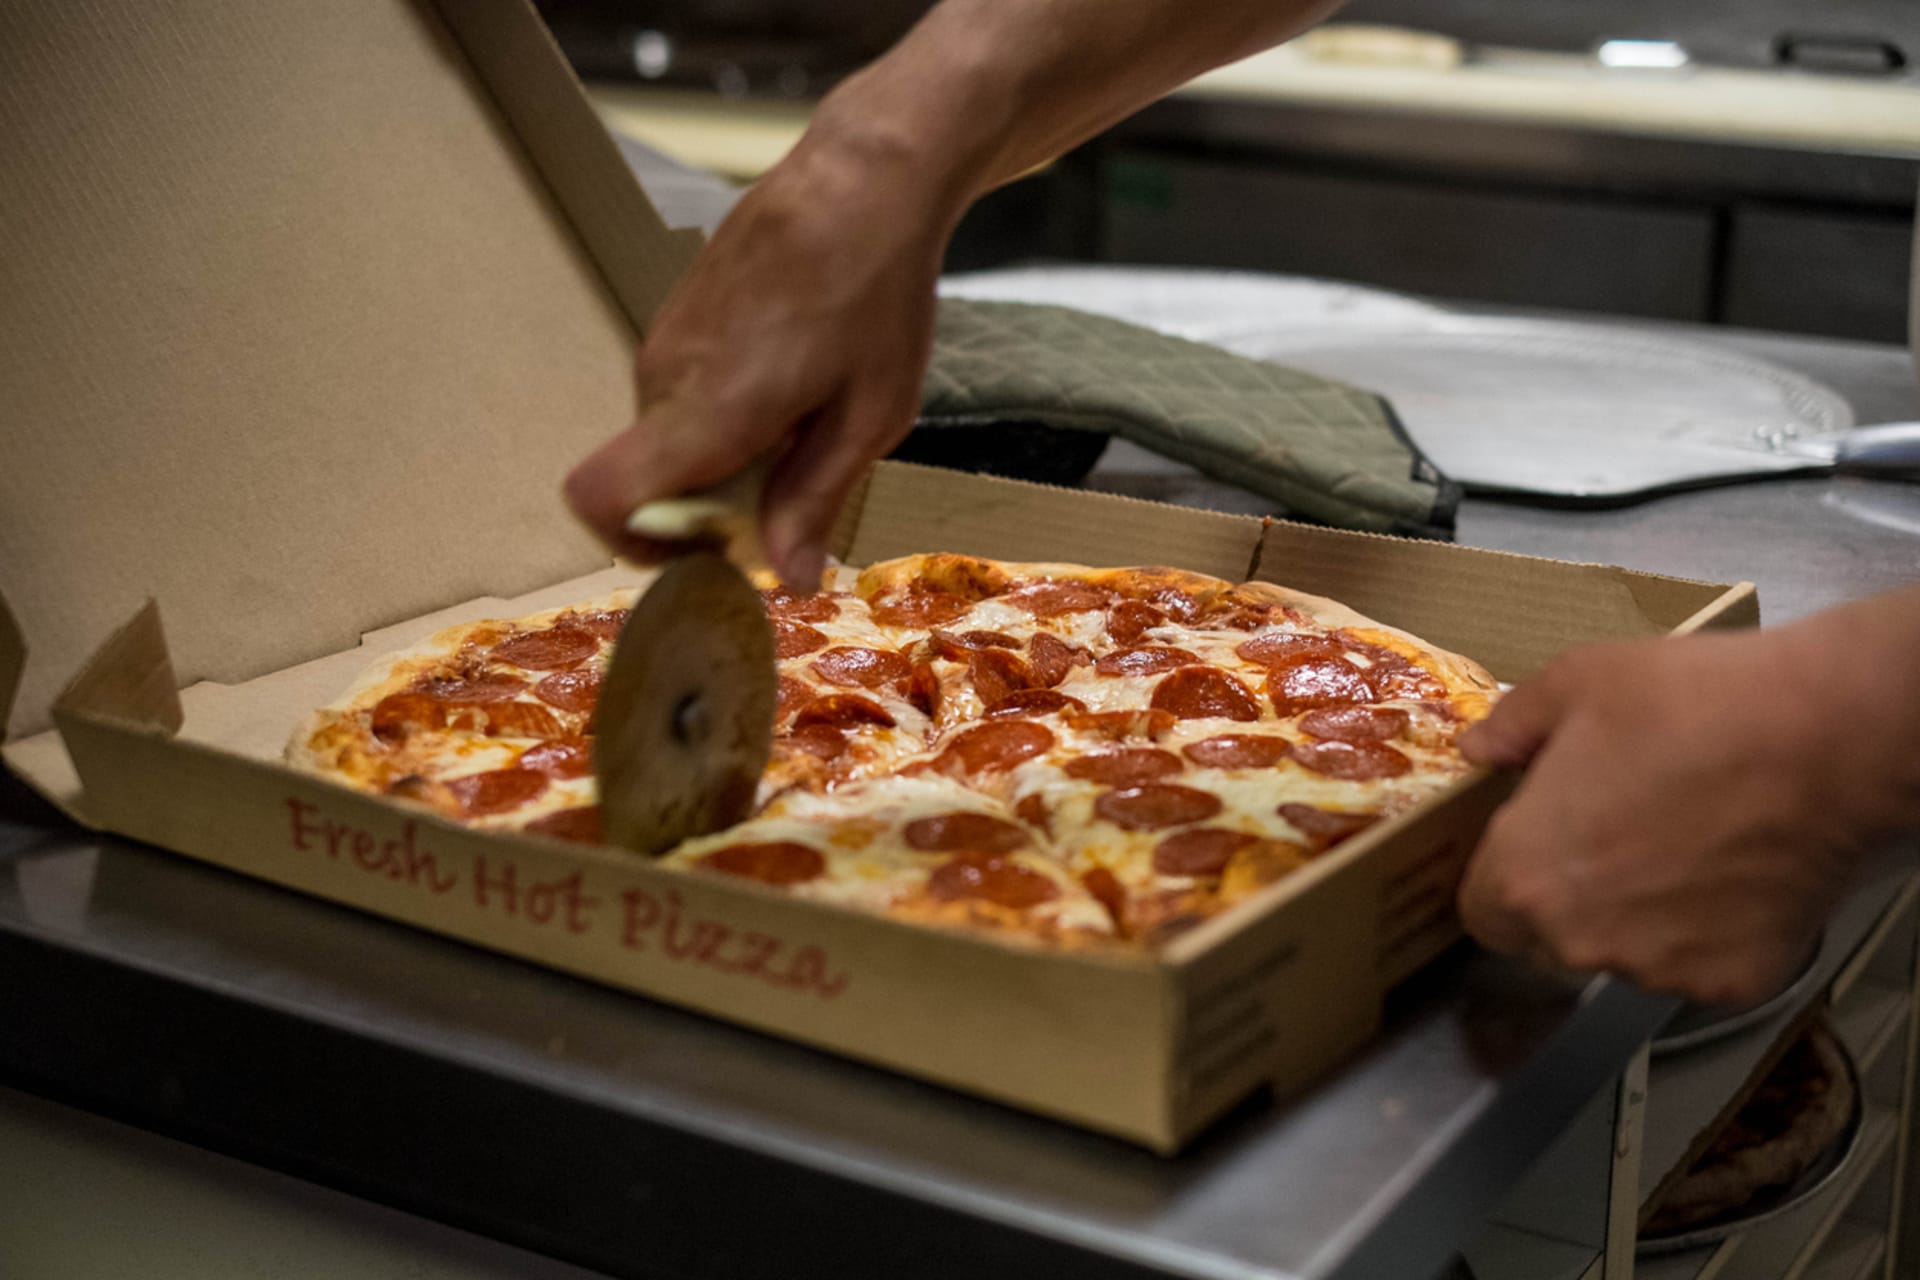 Donáška pizza zachránila ženě život